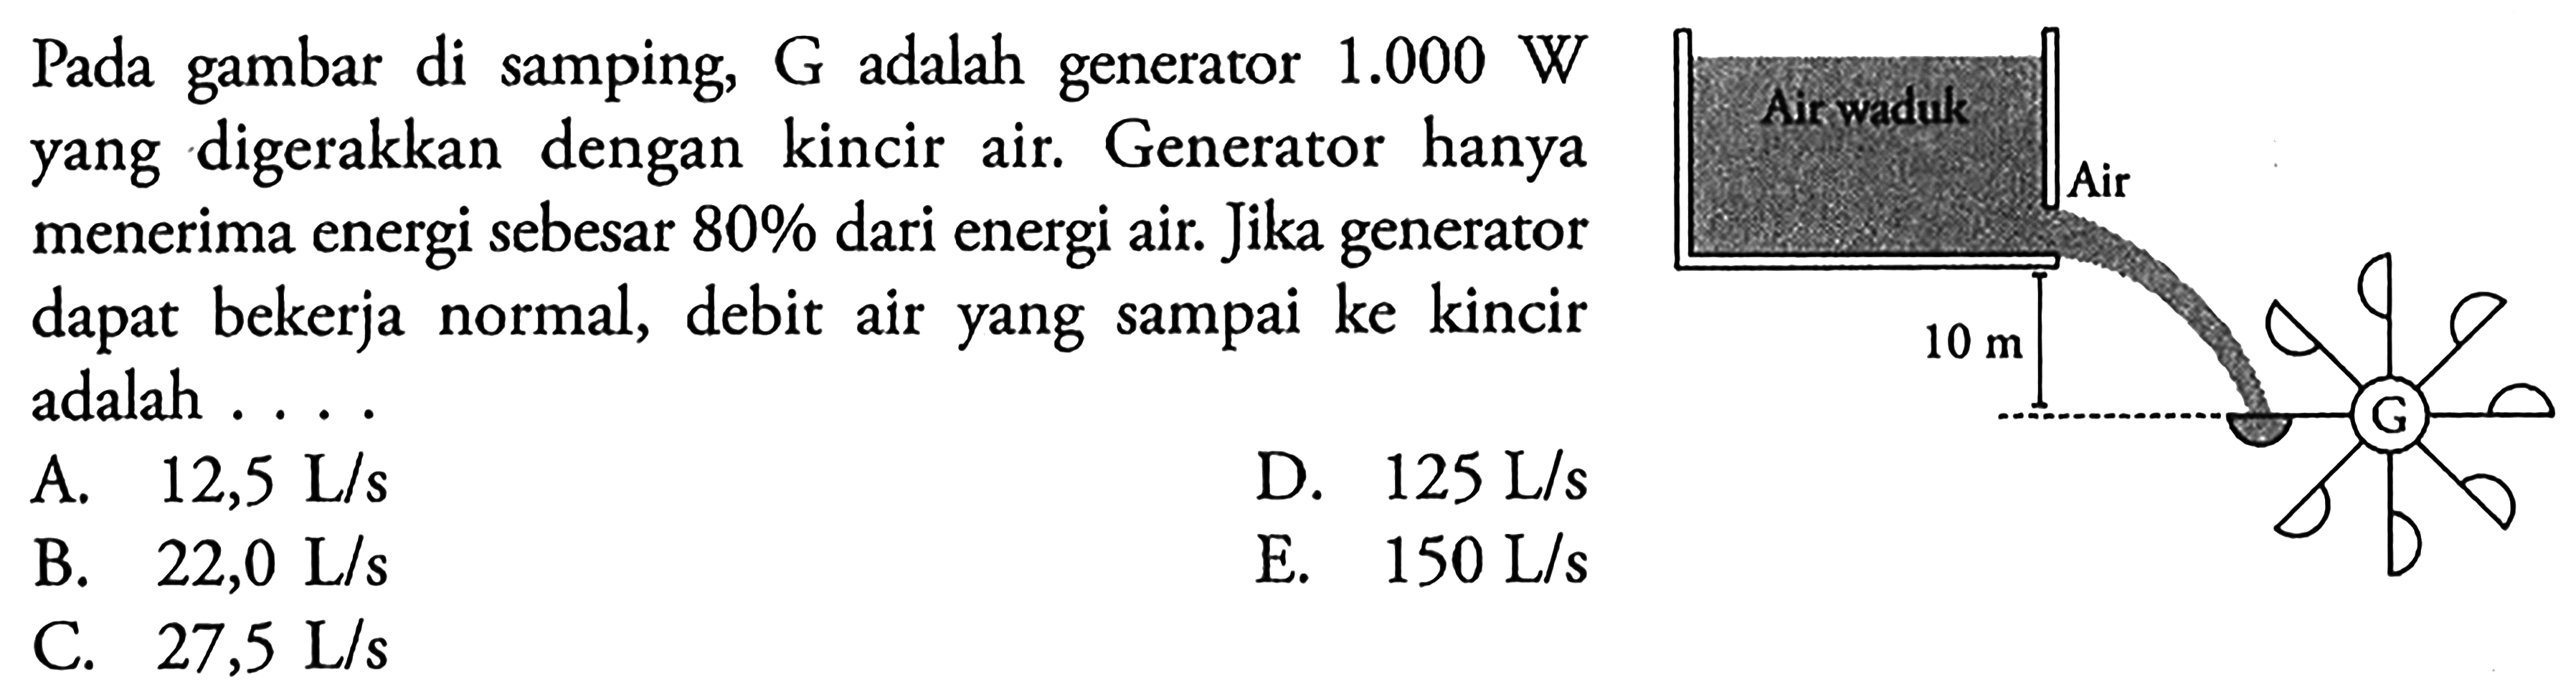 Pada gambar di samping, G adalah generator 1.000 W yang digerakkan dengan kincir air. Generator hanya menerima energi sebesar 80% dari energi air. Jika generator dapat bekerja normal, debit air yang sampai ke kincir adalah . . . . Air waduk Air 10 m